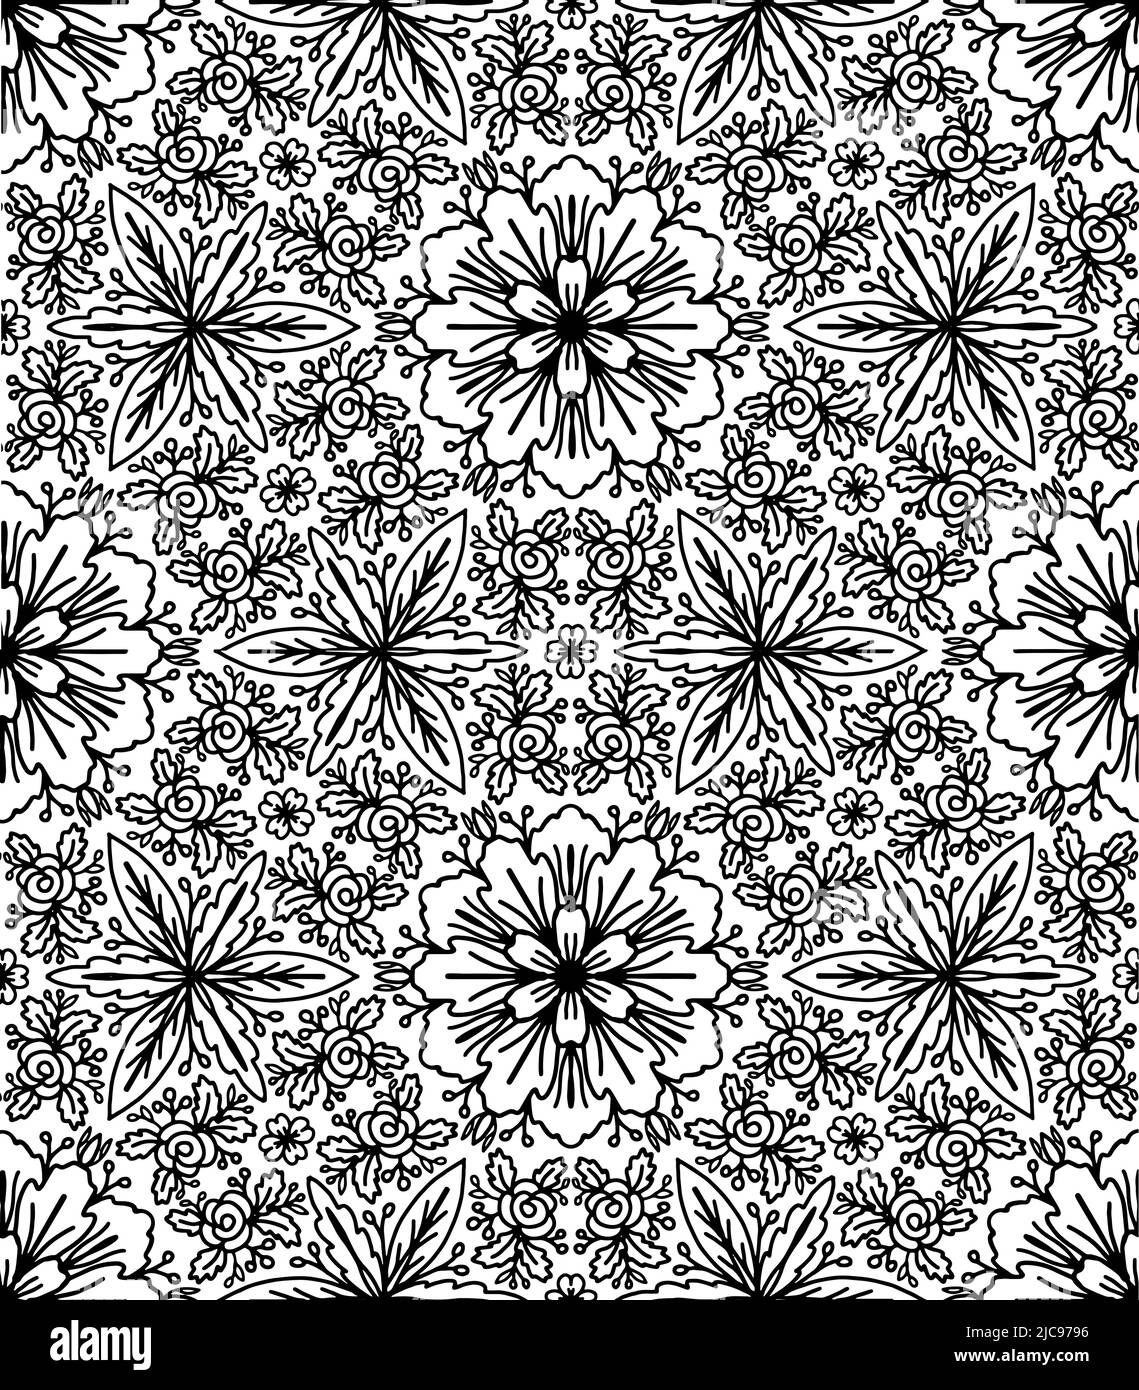 Elementi floreali in bianco e nero per carte di design , inviti o colorin page Illustrazione Vettoriale